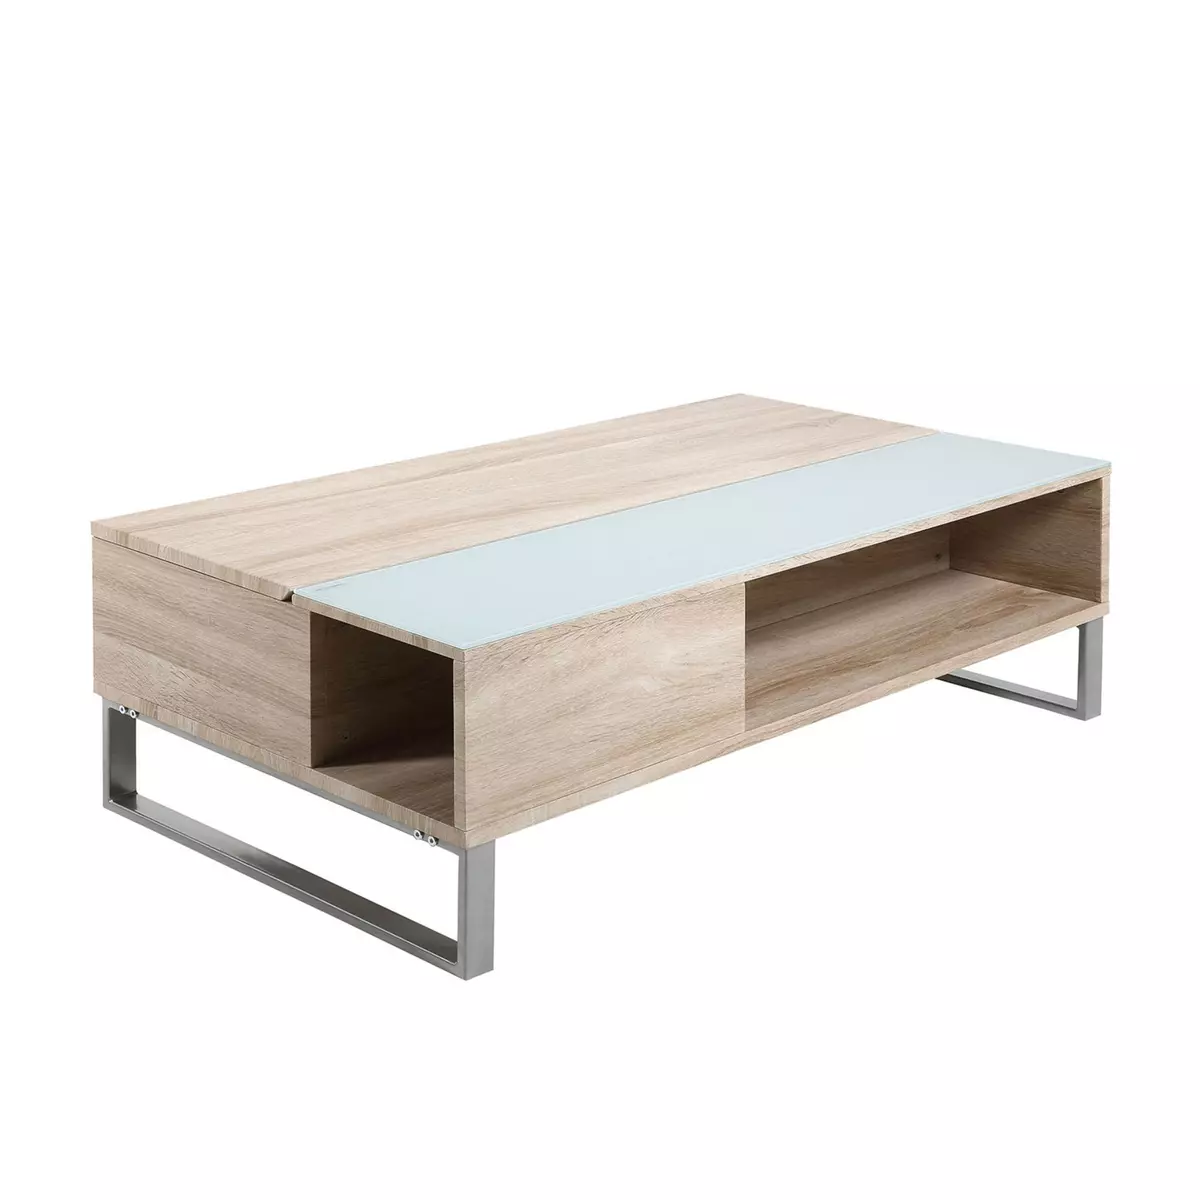 CONCEPT USINE Table basse blanche plateau relevable bois ELA